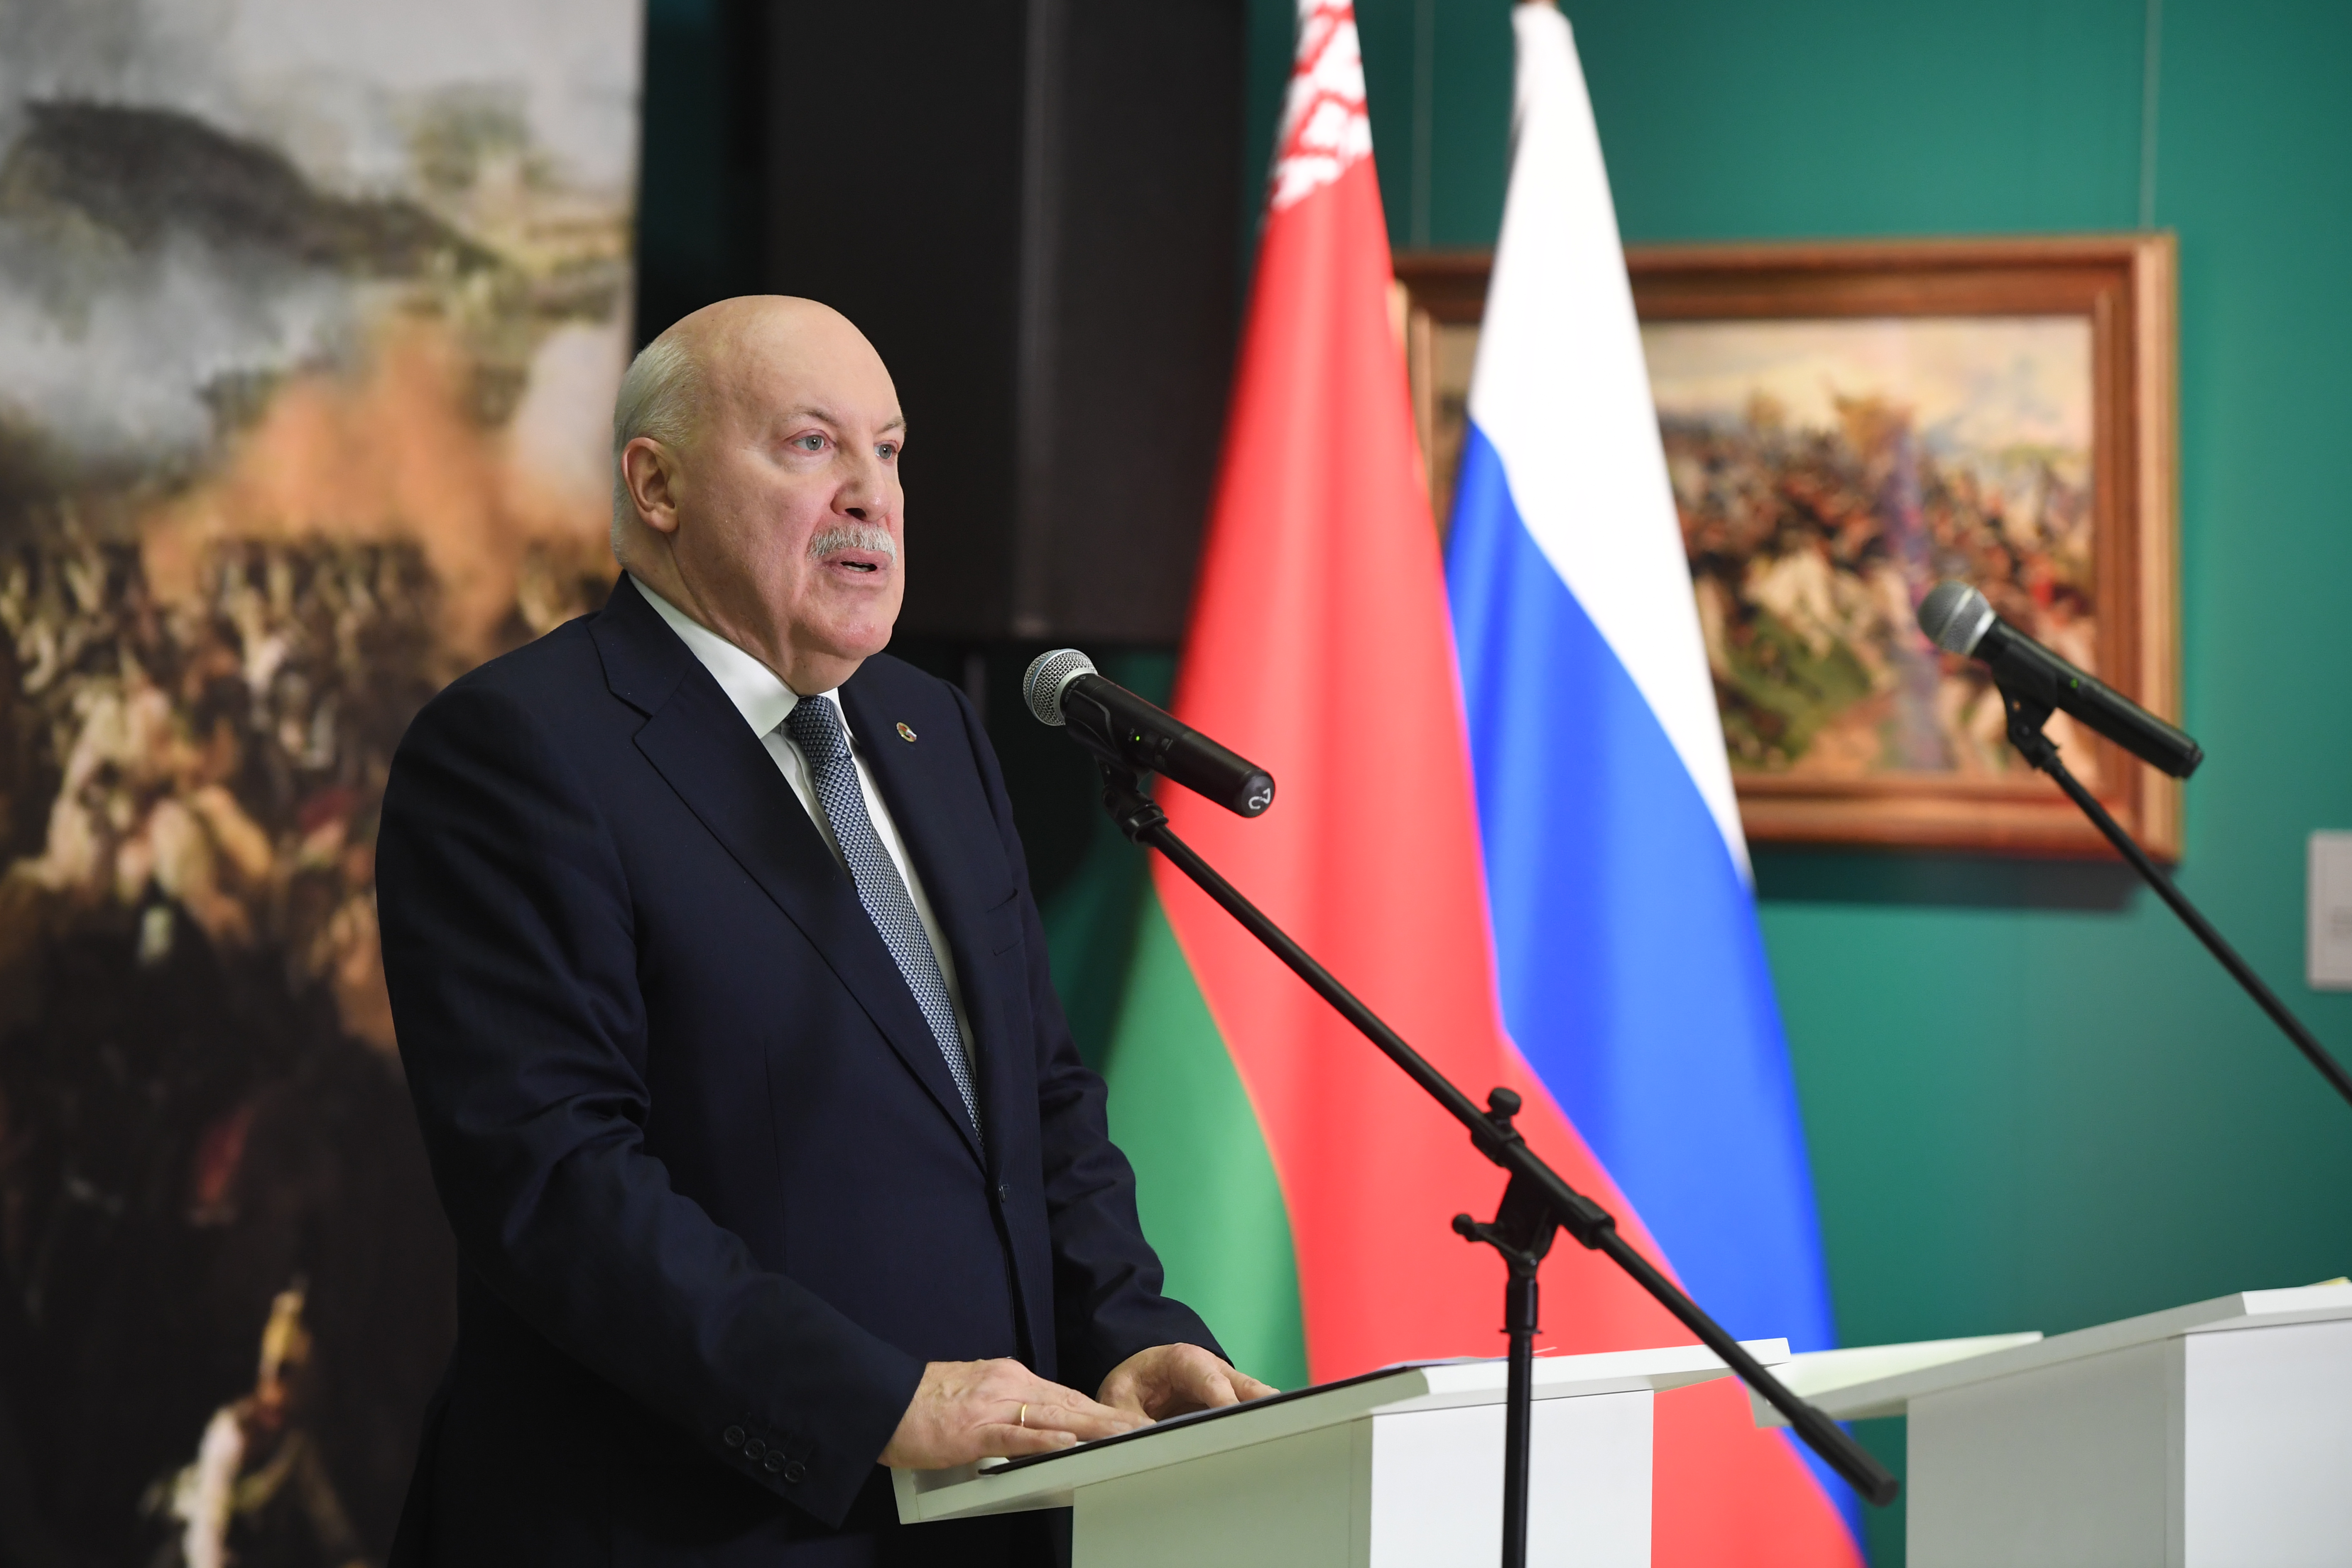 Мезенцев заявил, что союзный договор определил будущее во взаимодействии РФ и Беларуси